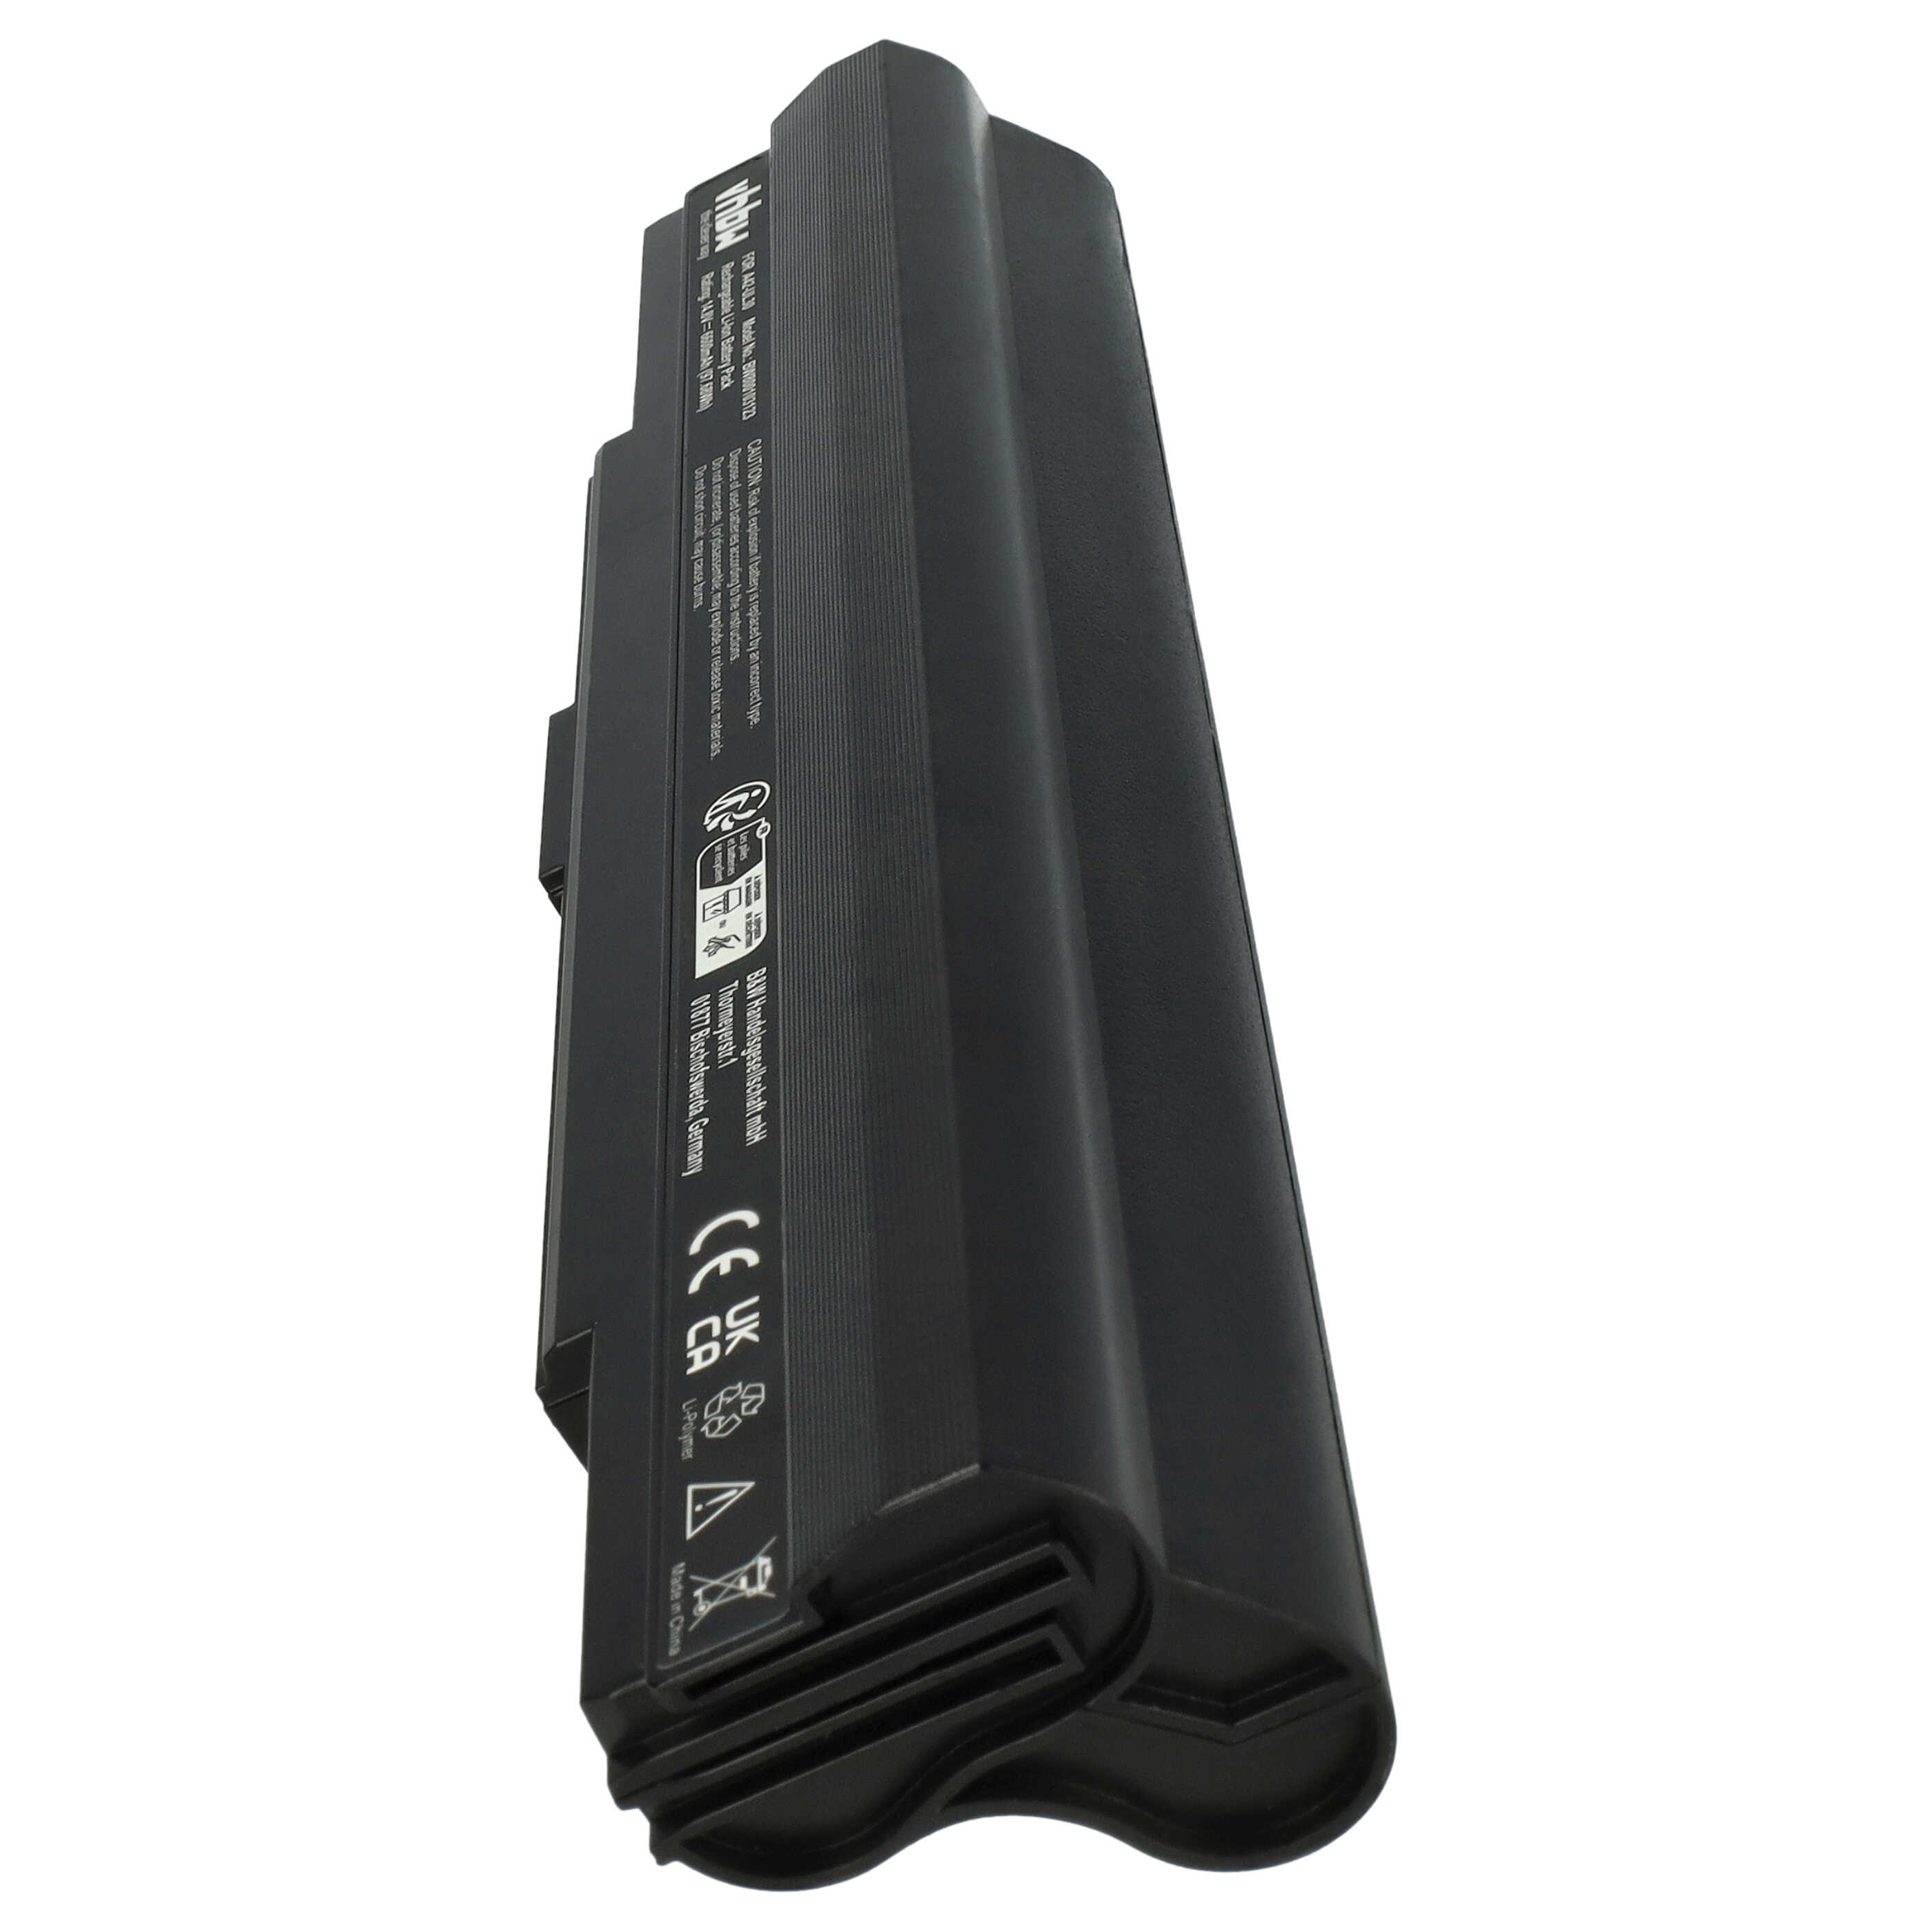 Batterie remplace Asus A42-UL50, A42-UL30, A31-UL30 pour ordinateur portable - 6600mAh 14,8V Li-ion, noir